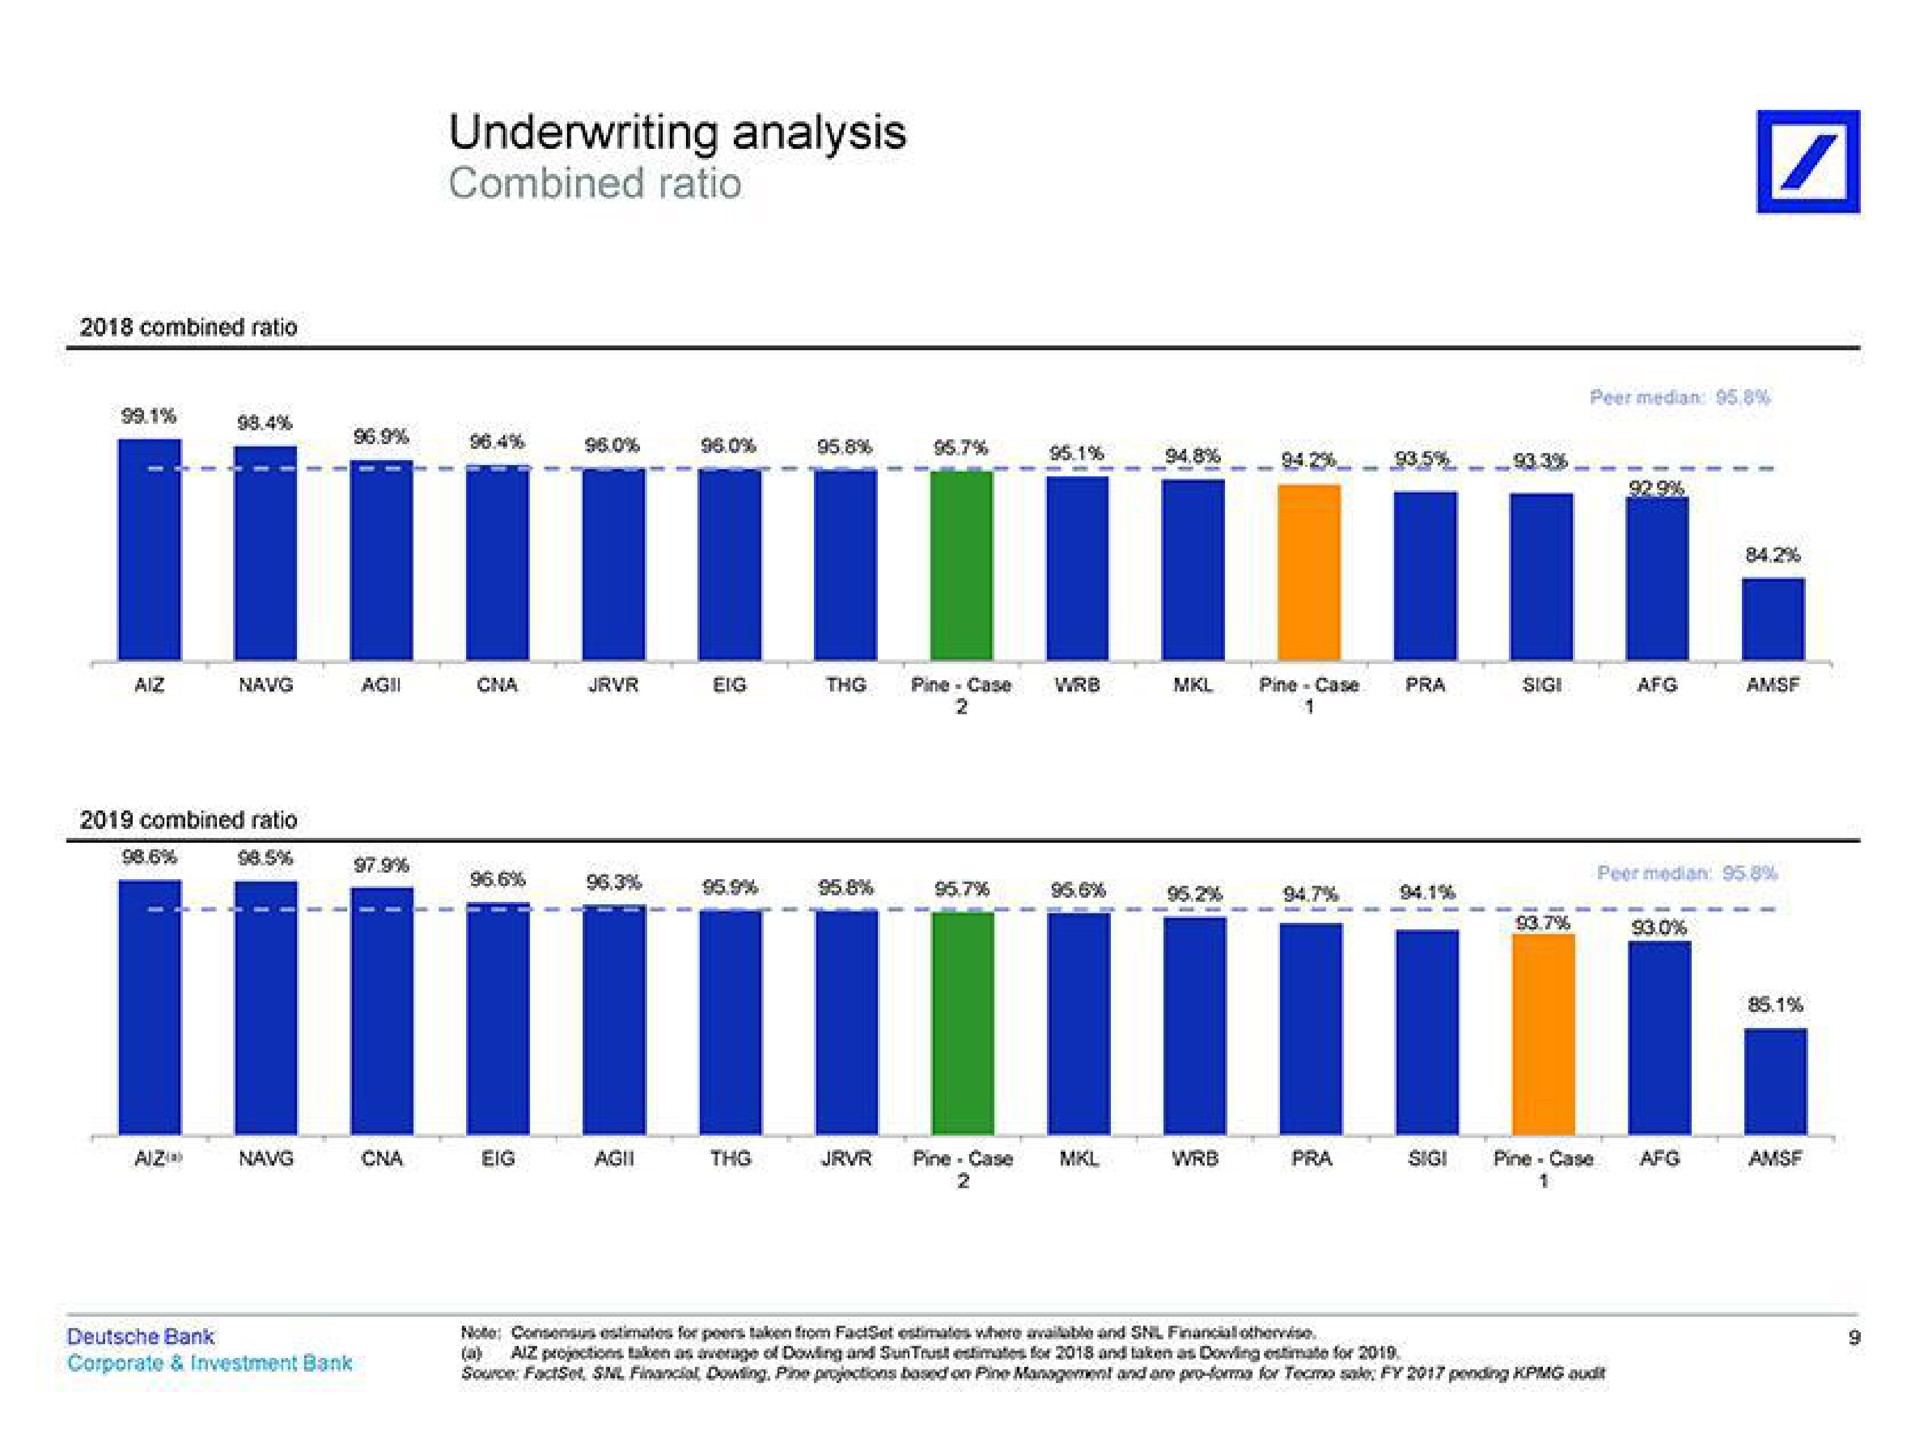 underwriting analysis combined ratio | Deutsche Bank